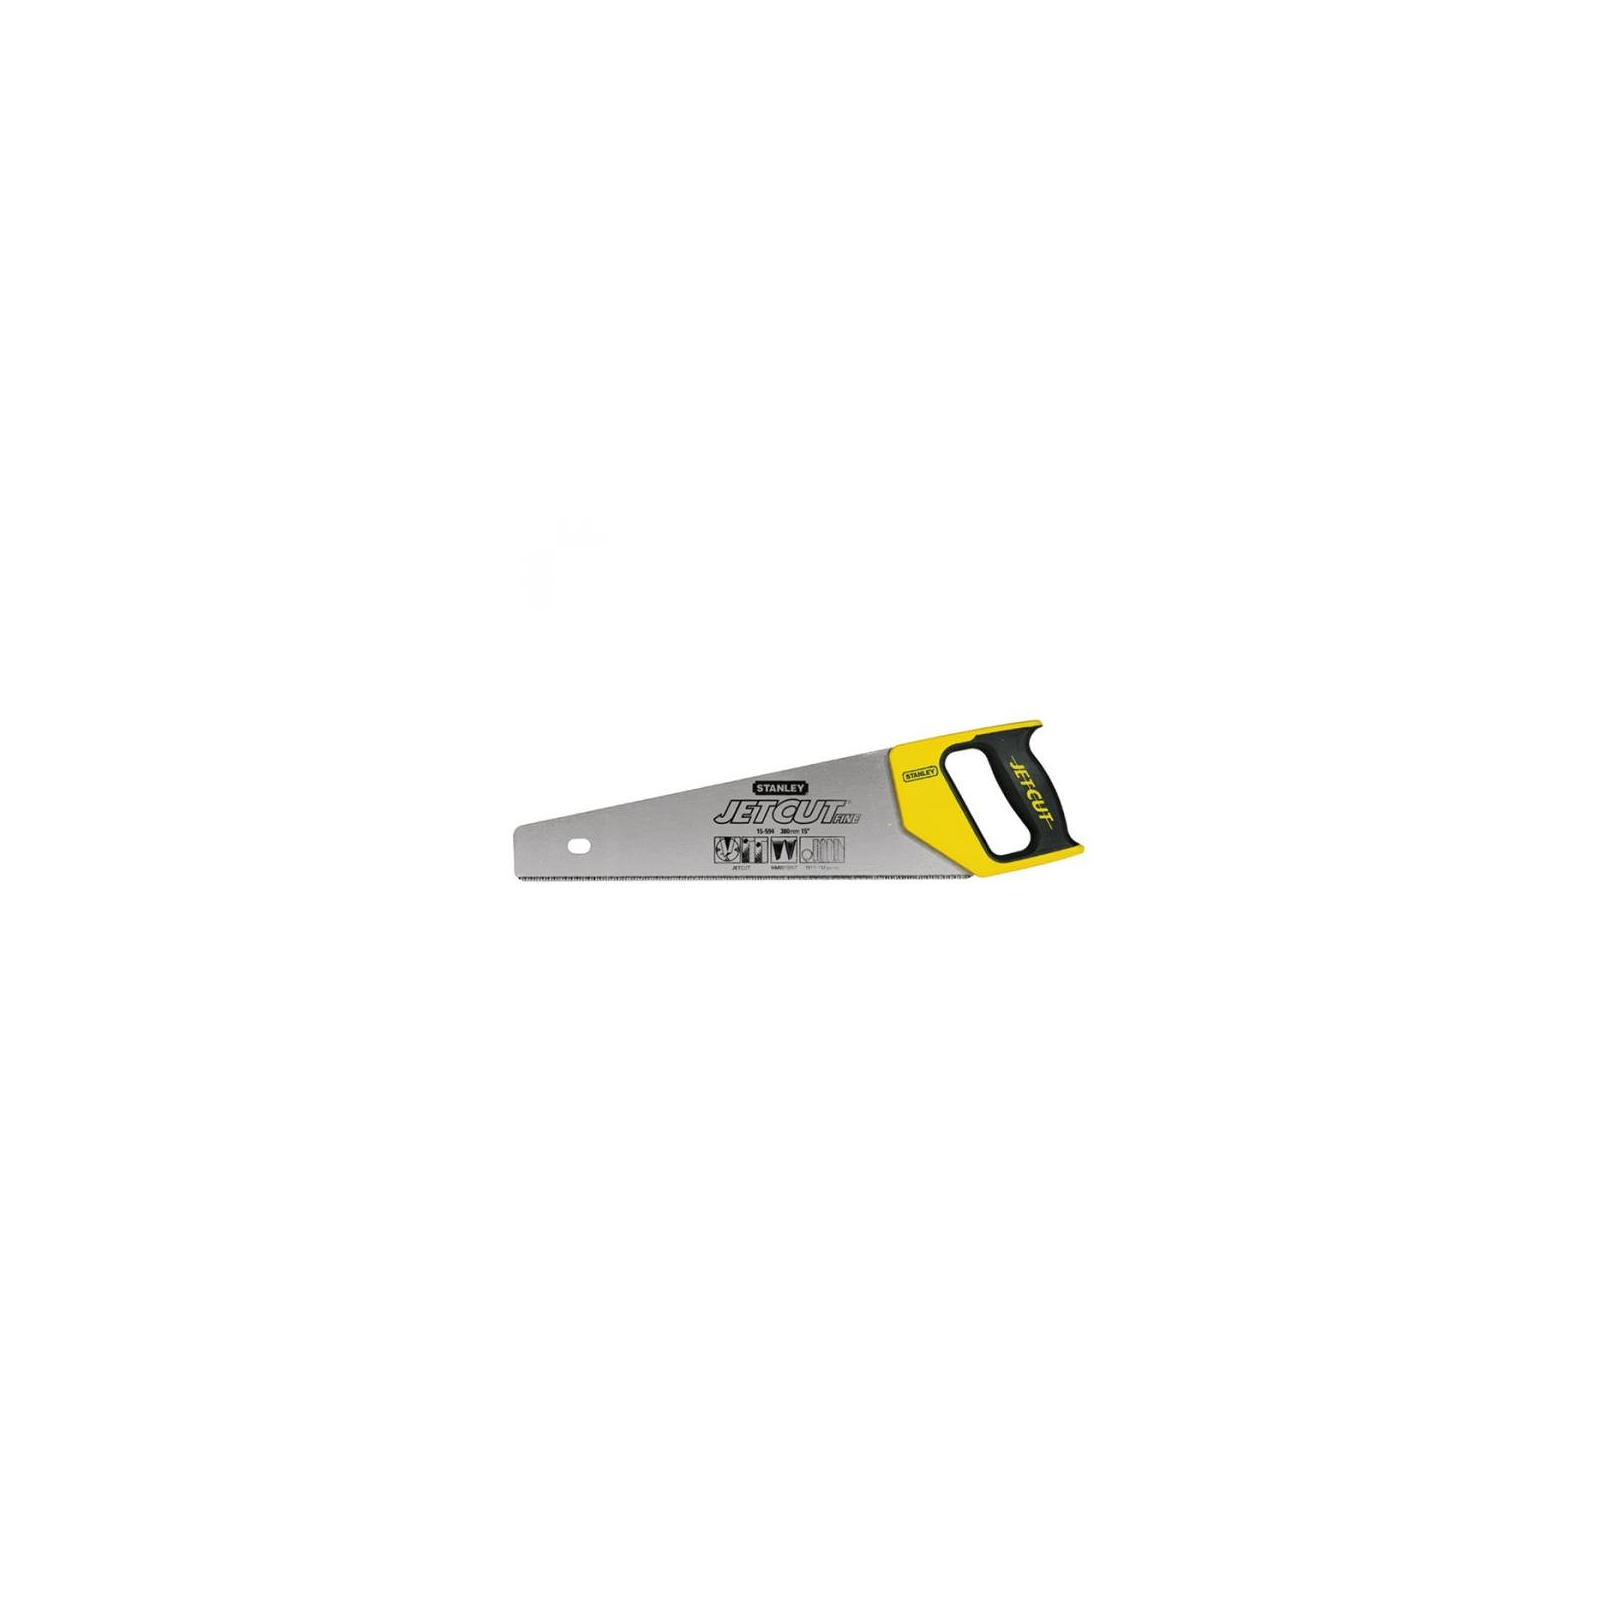 Ножівка Stanley Jet-Cut Fine 11 зубьев на дюйм, длина 450 мм (2-15-595)